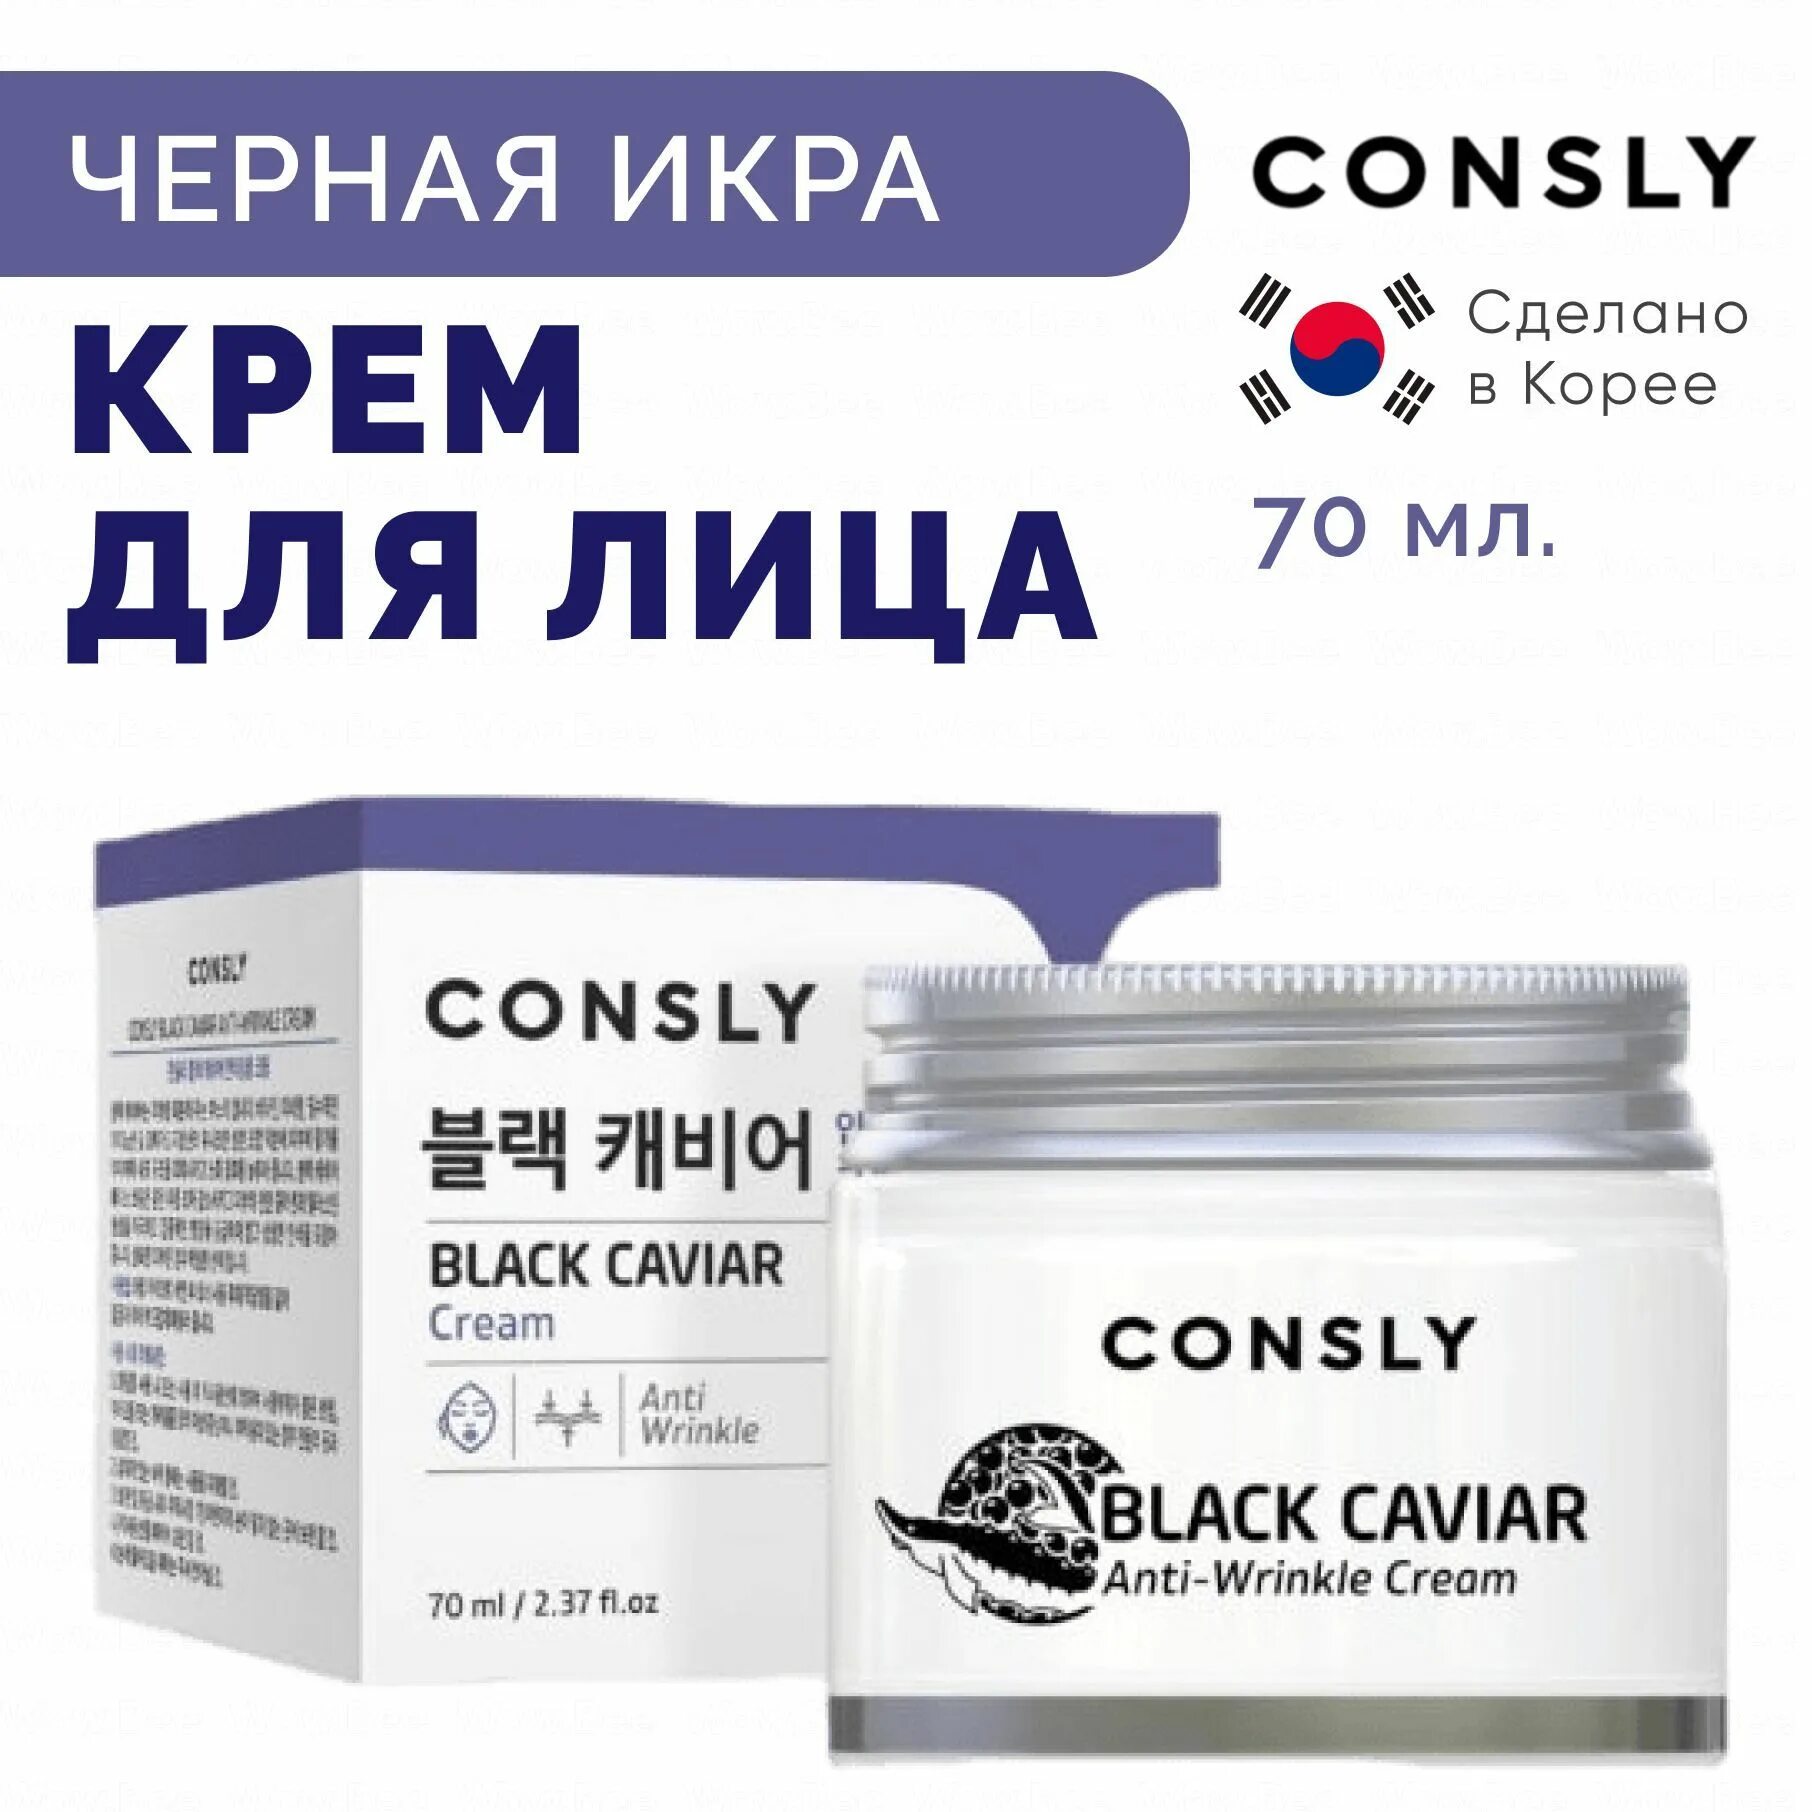 CONSLY Black Caviar Anti-Wrinkle Cream, 70ml. CONSLY крем. CONSLY крем для лица против морщин с экстрактом черной икры. CONSLY крем с гиалуроновой кислотой. Крем против морщин с гиалуроновой кислотой